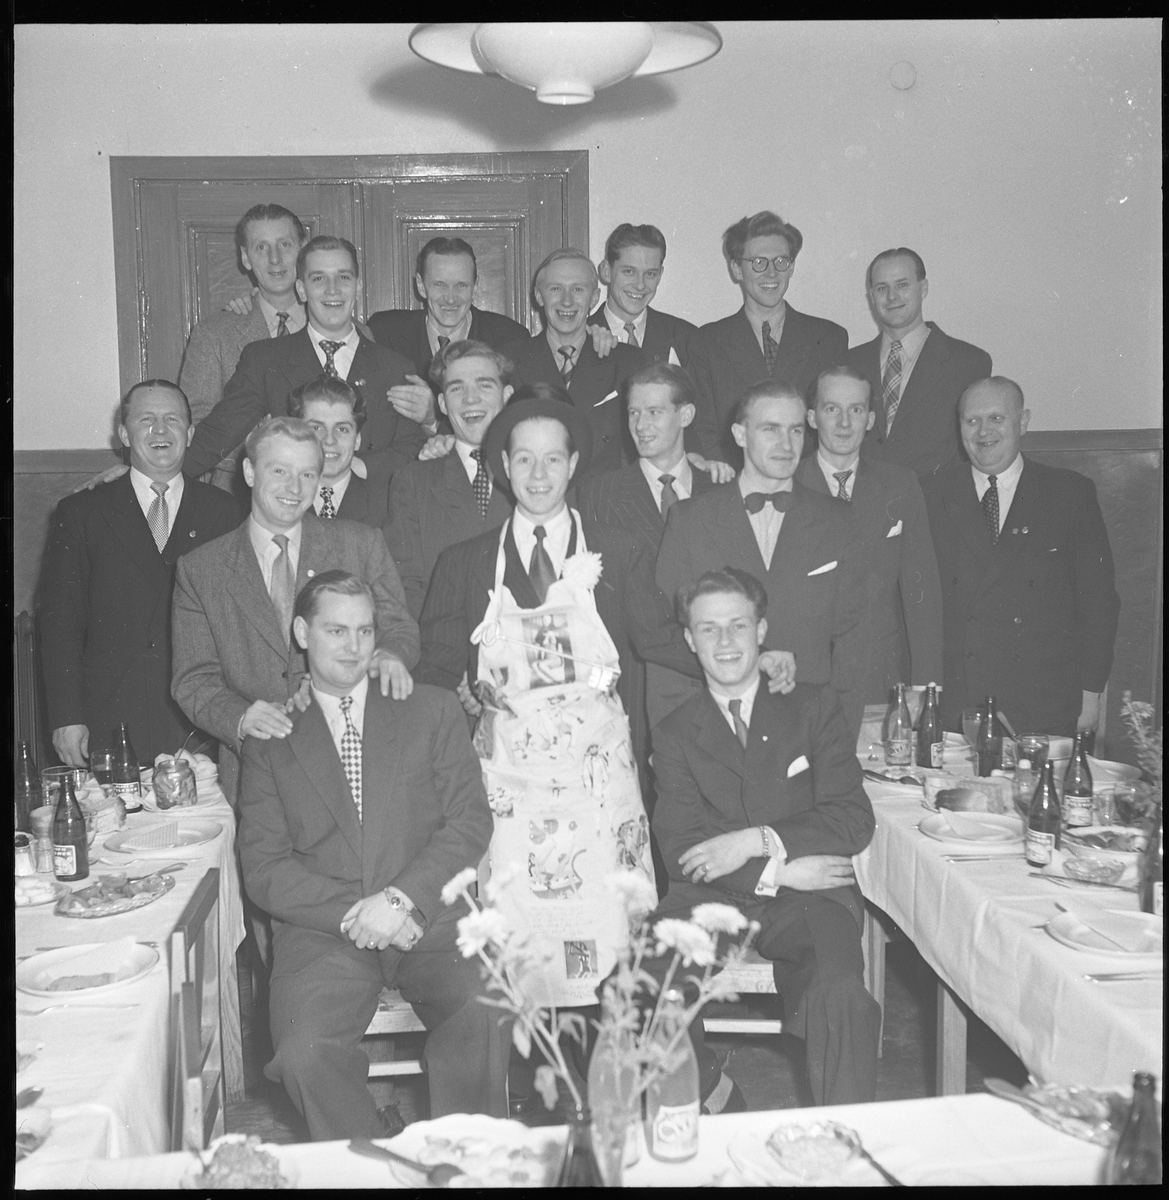 Grupp oidentifierade män på kalas. Eventuellt en svensexa. Nov 1950